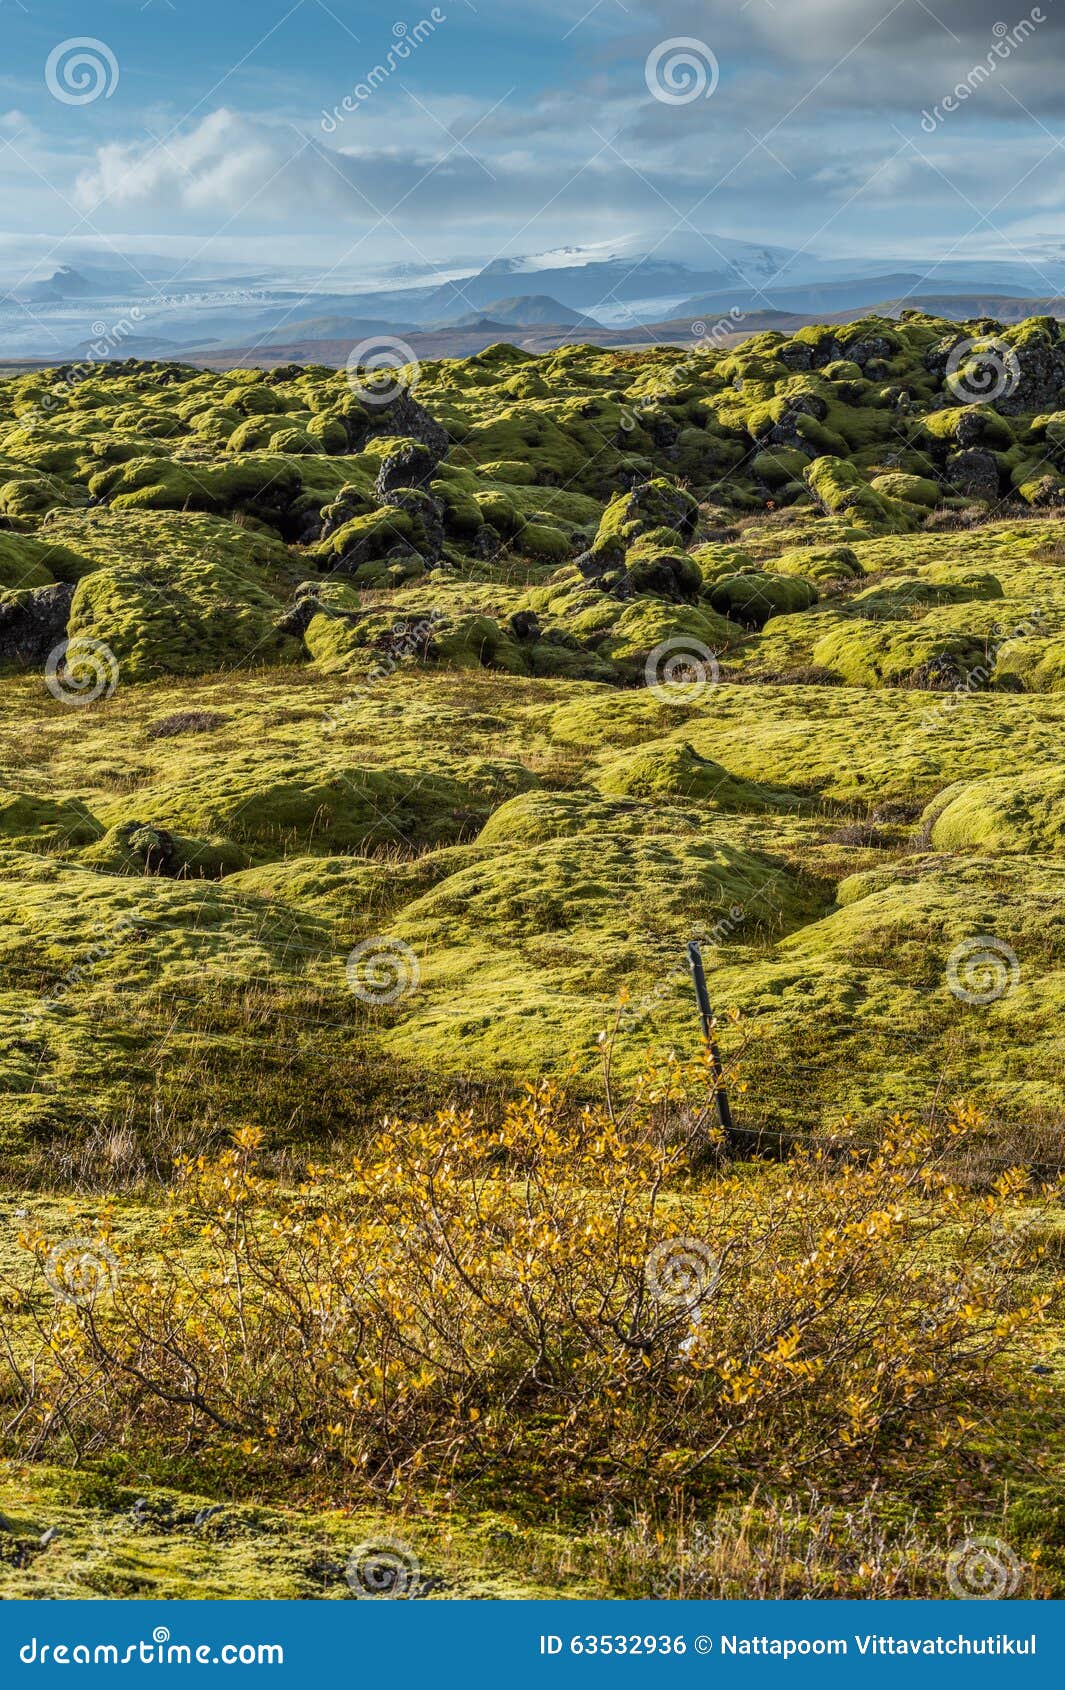 Grindavik在绿色青苔盖用黄色植物前景和雪山背景的冰岛的熔岩荒野库存照片 图片包括有grindavik在绿色青苔盖用黄色植物前景和雪山背景 的冰岛的熔岩荒野